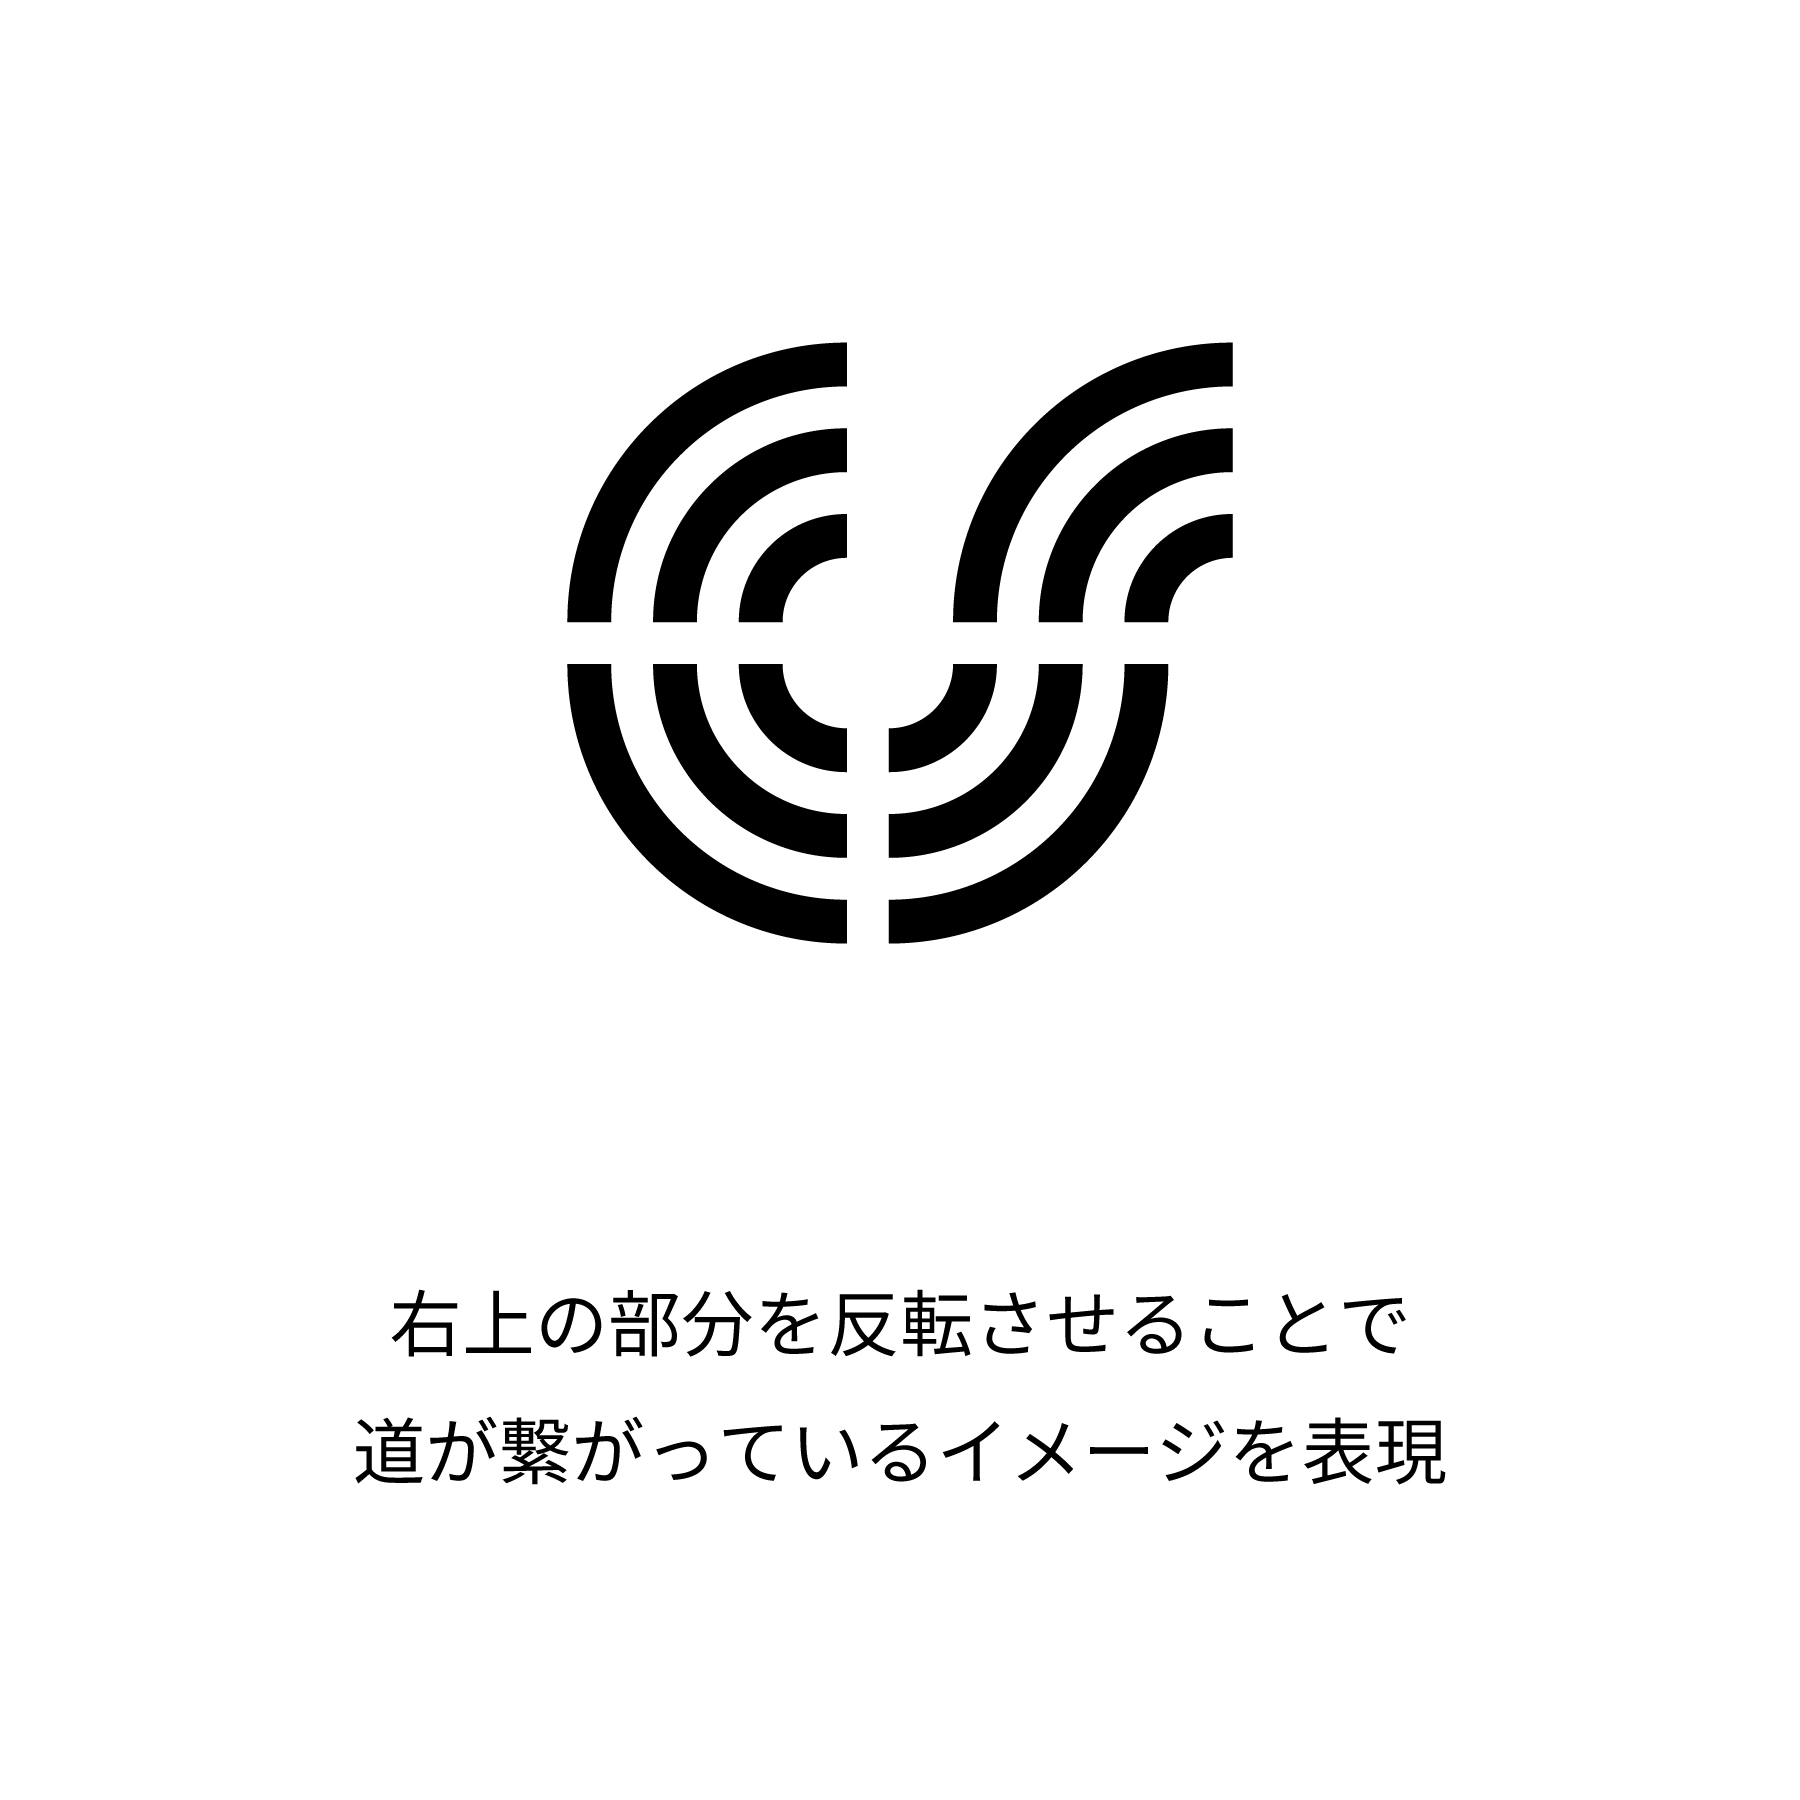 JAF logo